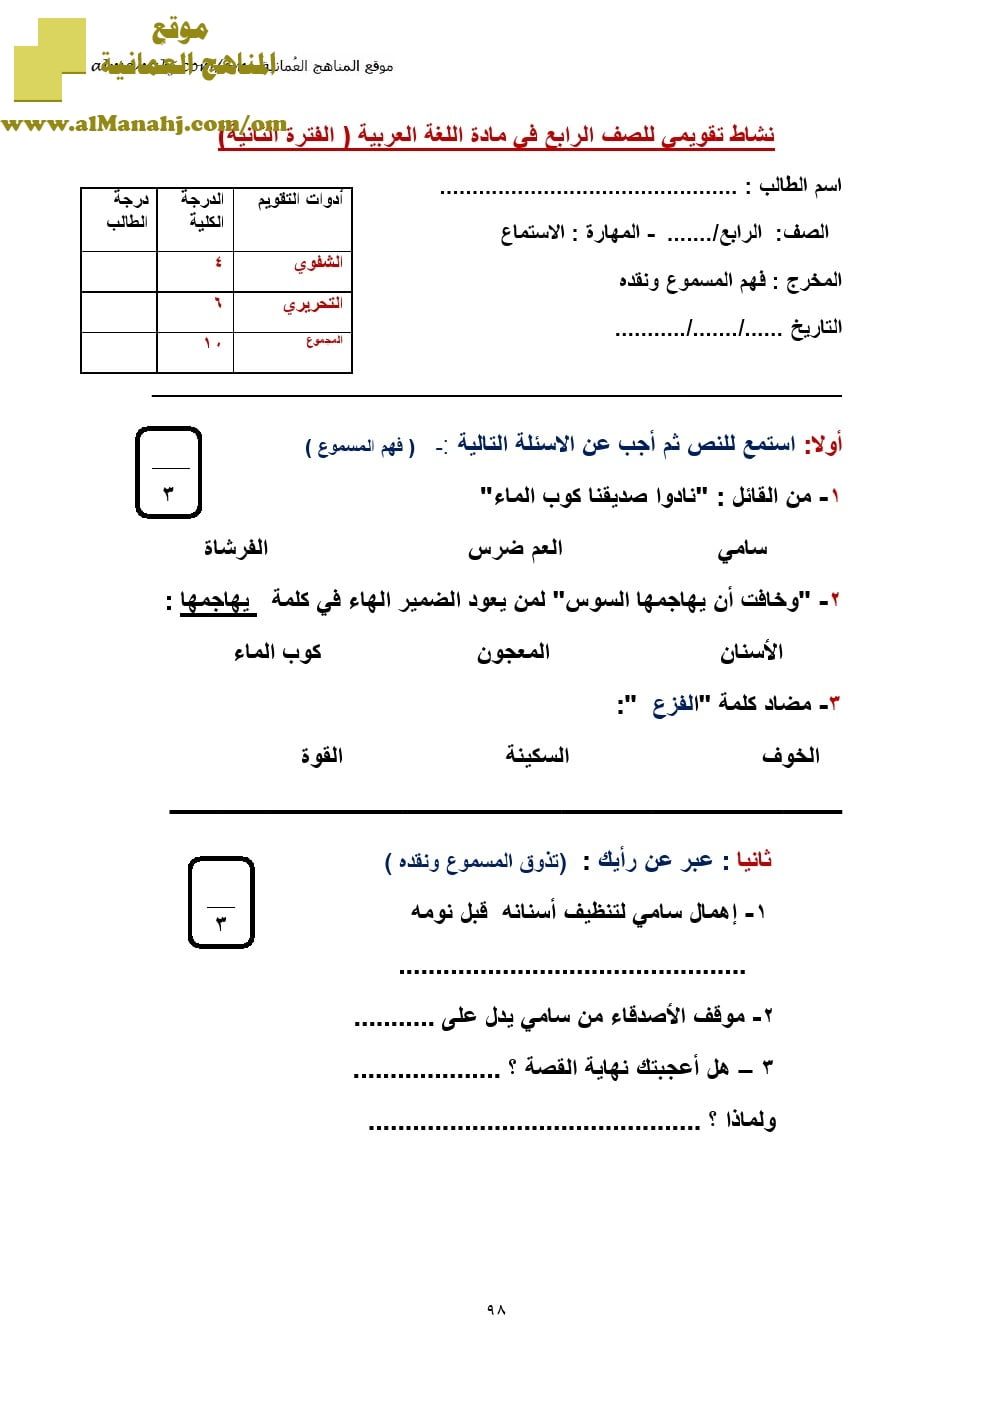 نماذج اختبارات قصيرة (لغة عربية) الرابع